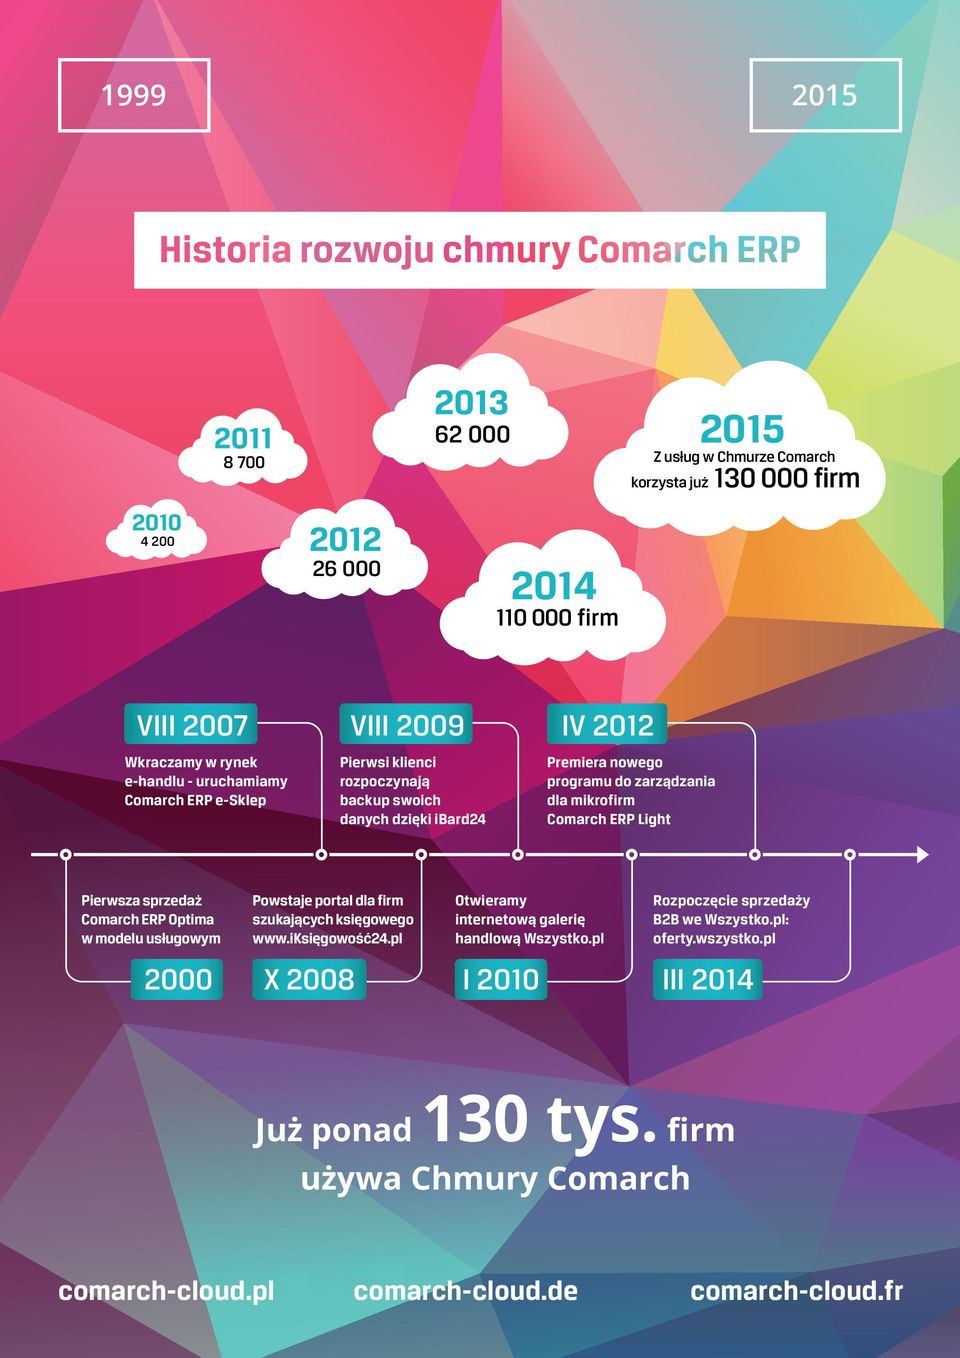 Pierwsza sprzedaż Comarch ERP Optima w modelu usługowym 2000 Powstaje portal dla firm szukających księgowego www.iksięgowość24.